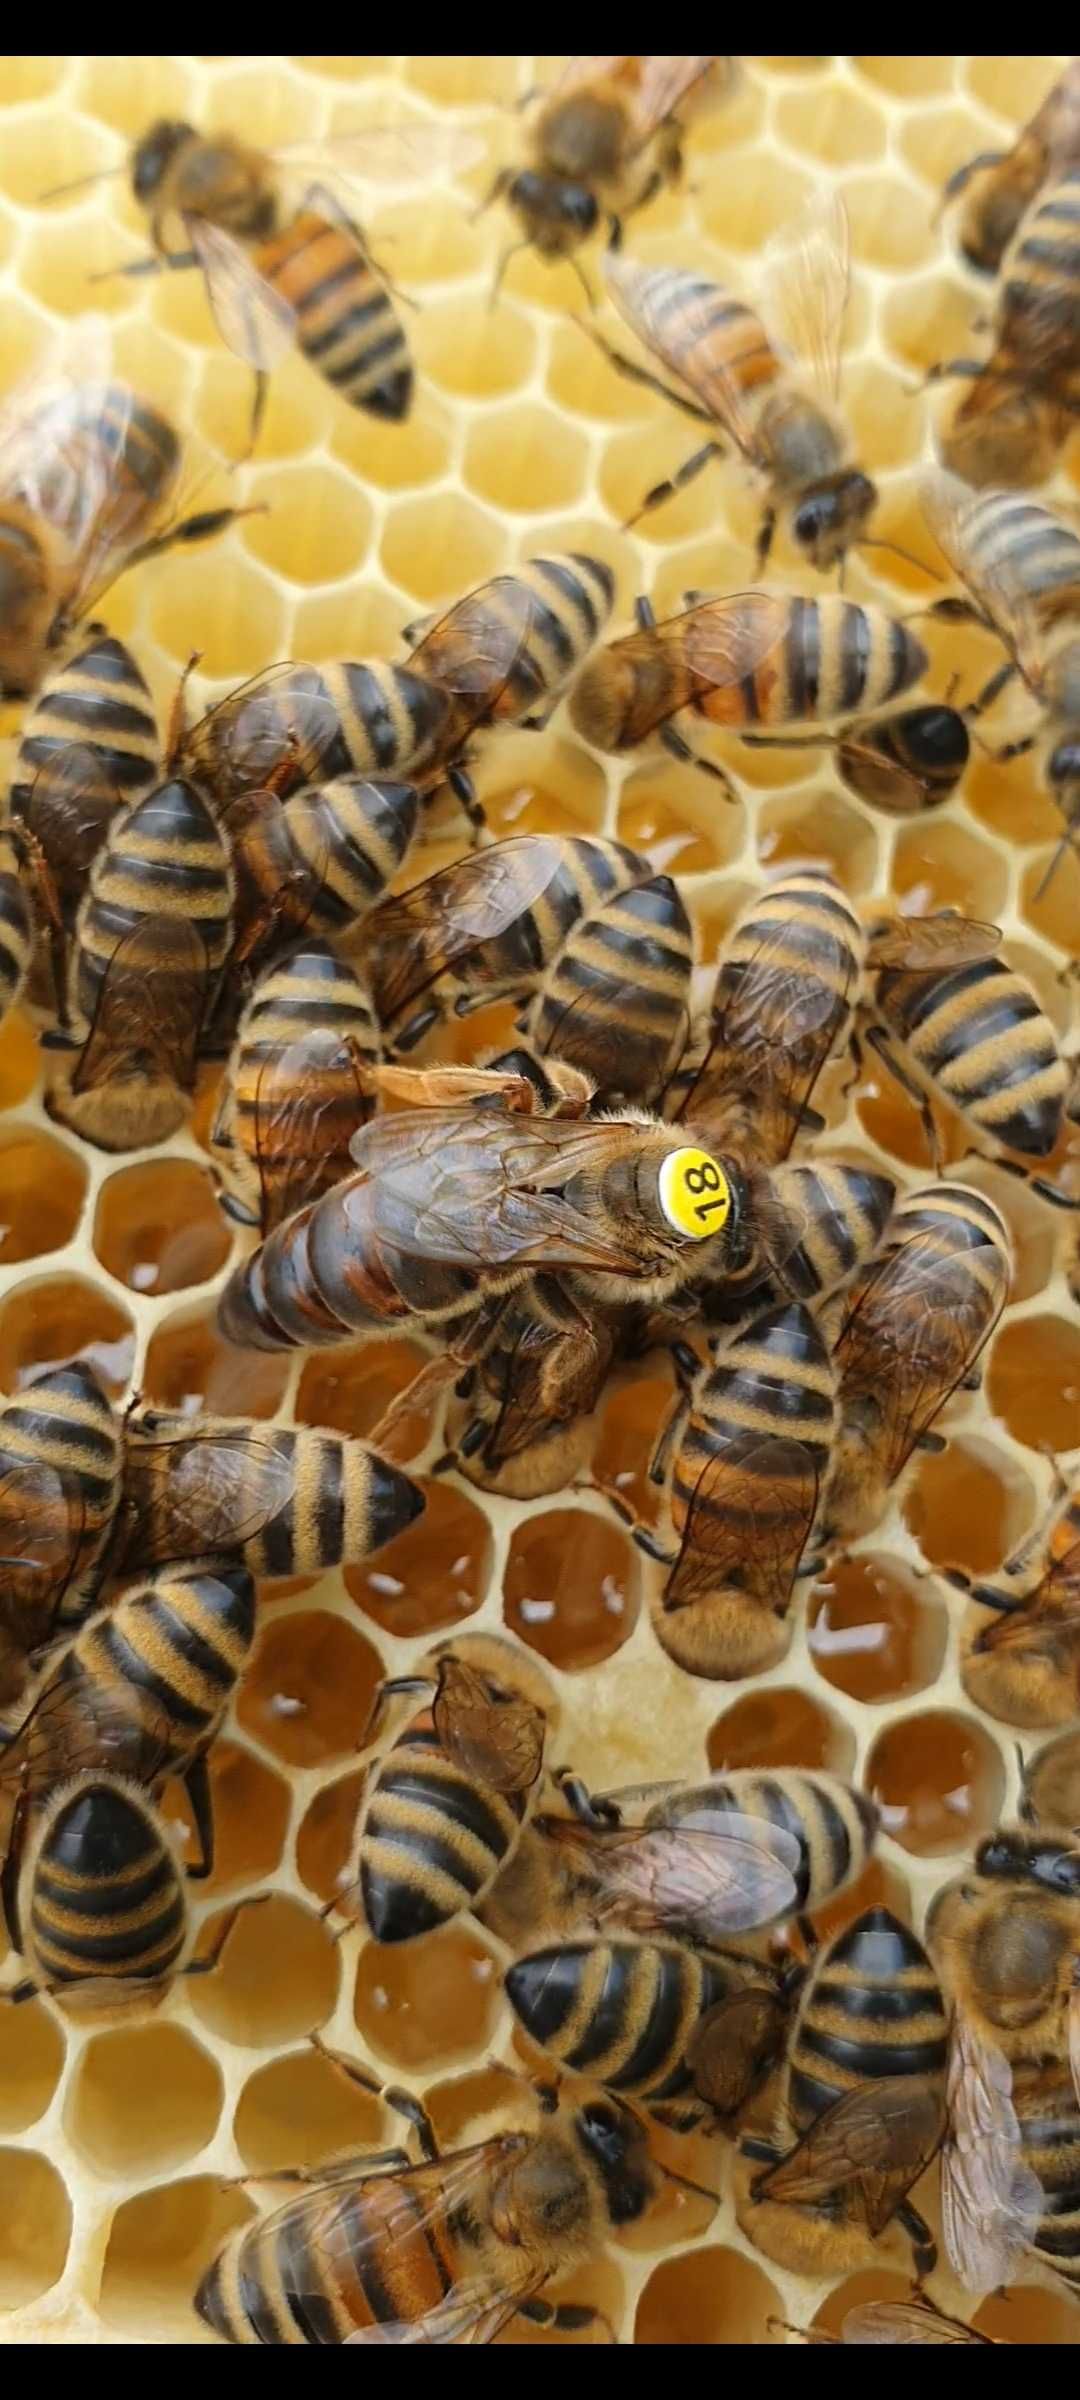 Matka pszczela, królowa krainka car Sklenar H47 UNASIENIONA